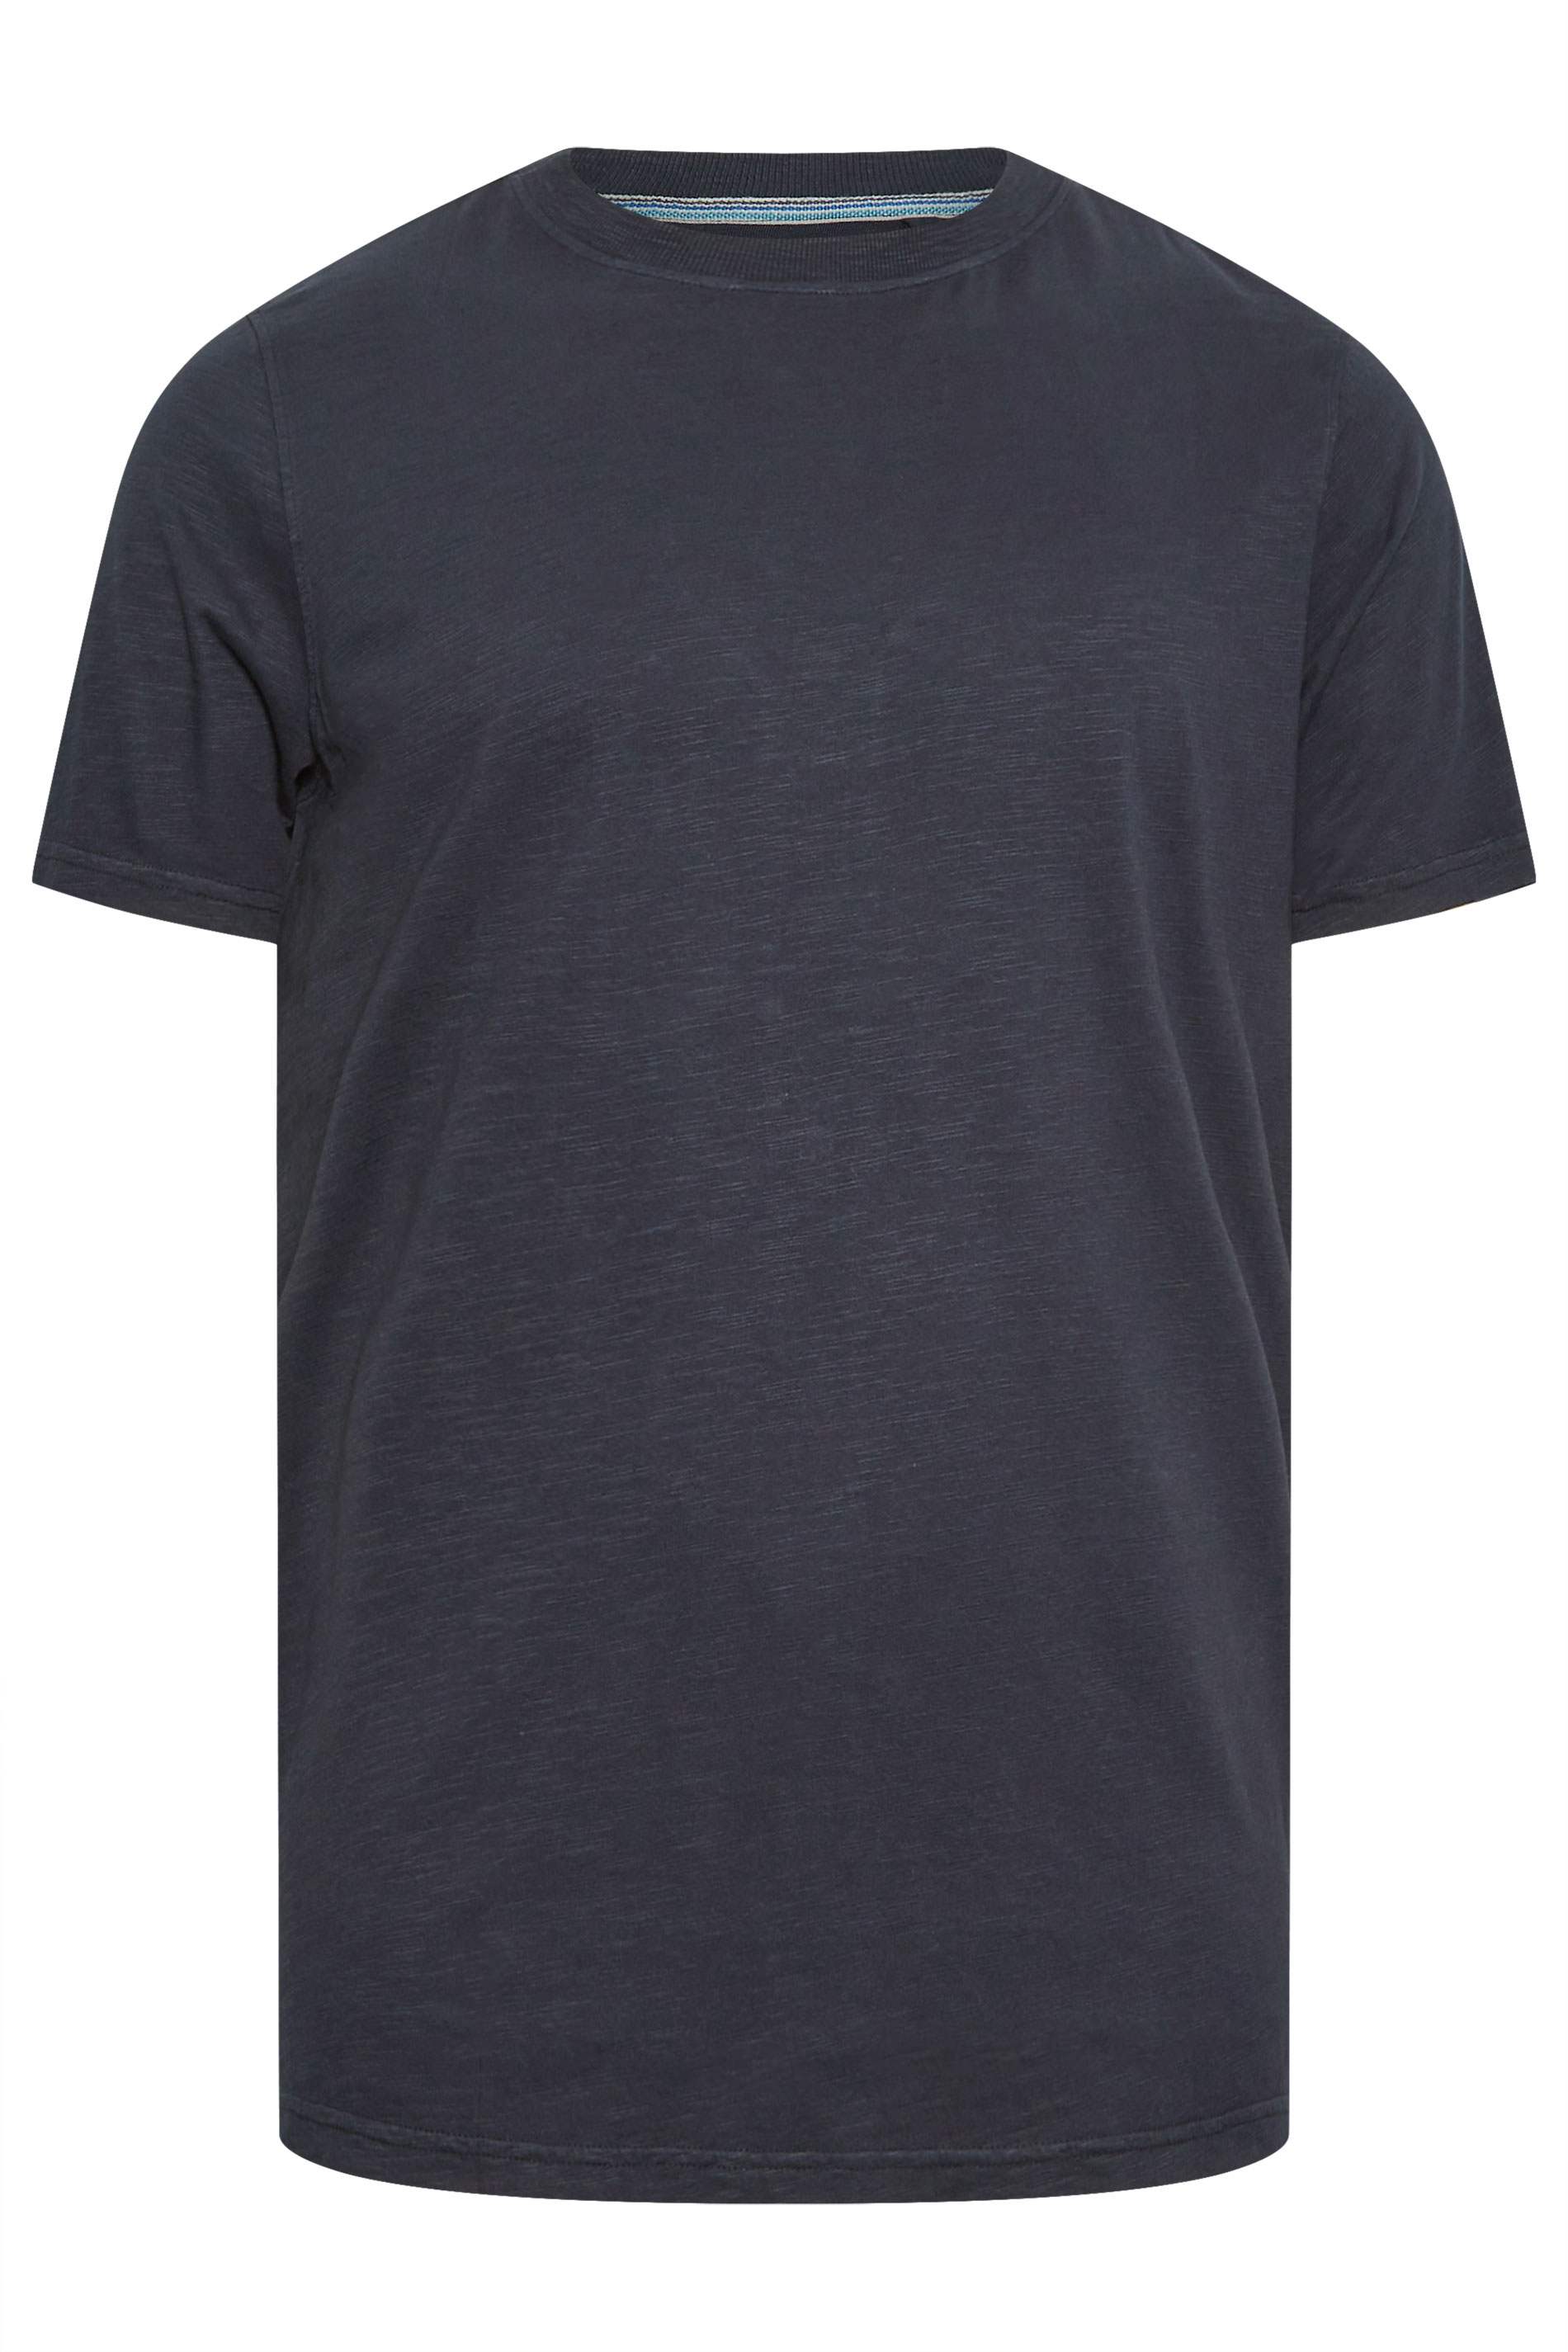 BadRhino Big & Tall Navy Blue Slub T-Shirt | BadRhino 3